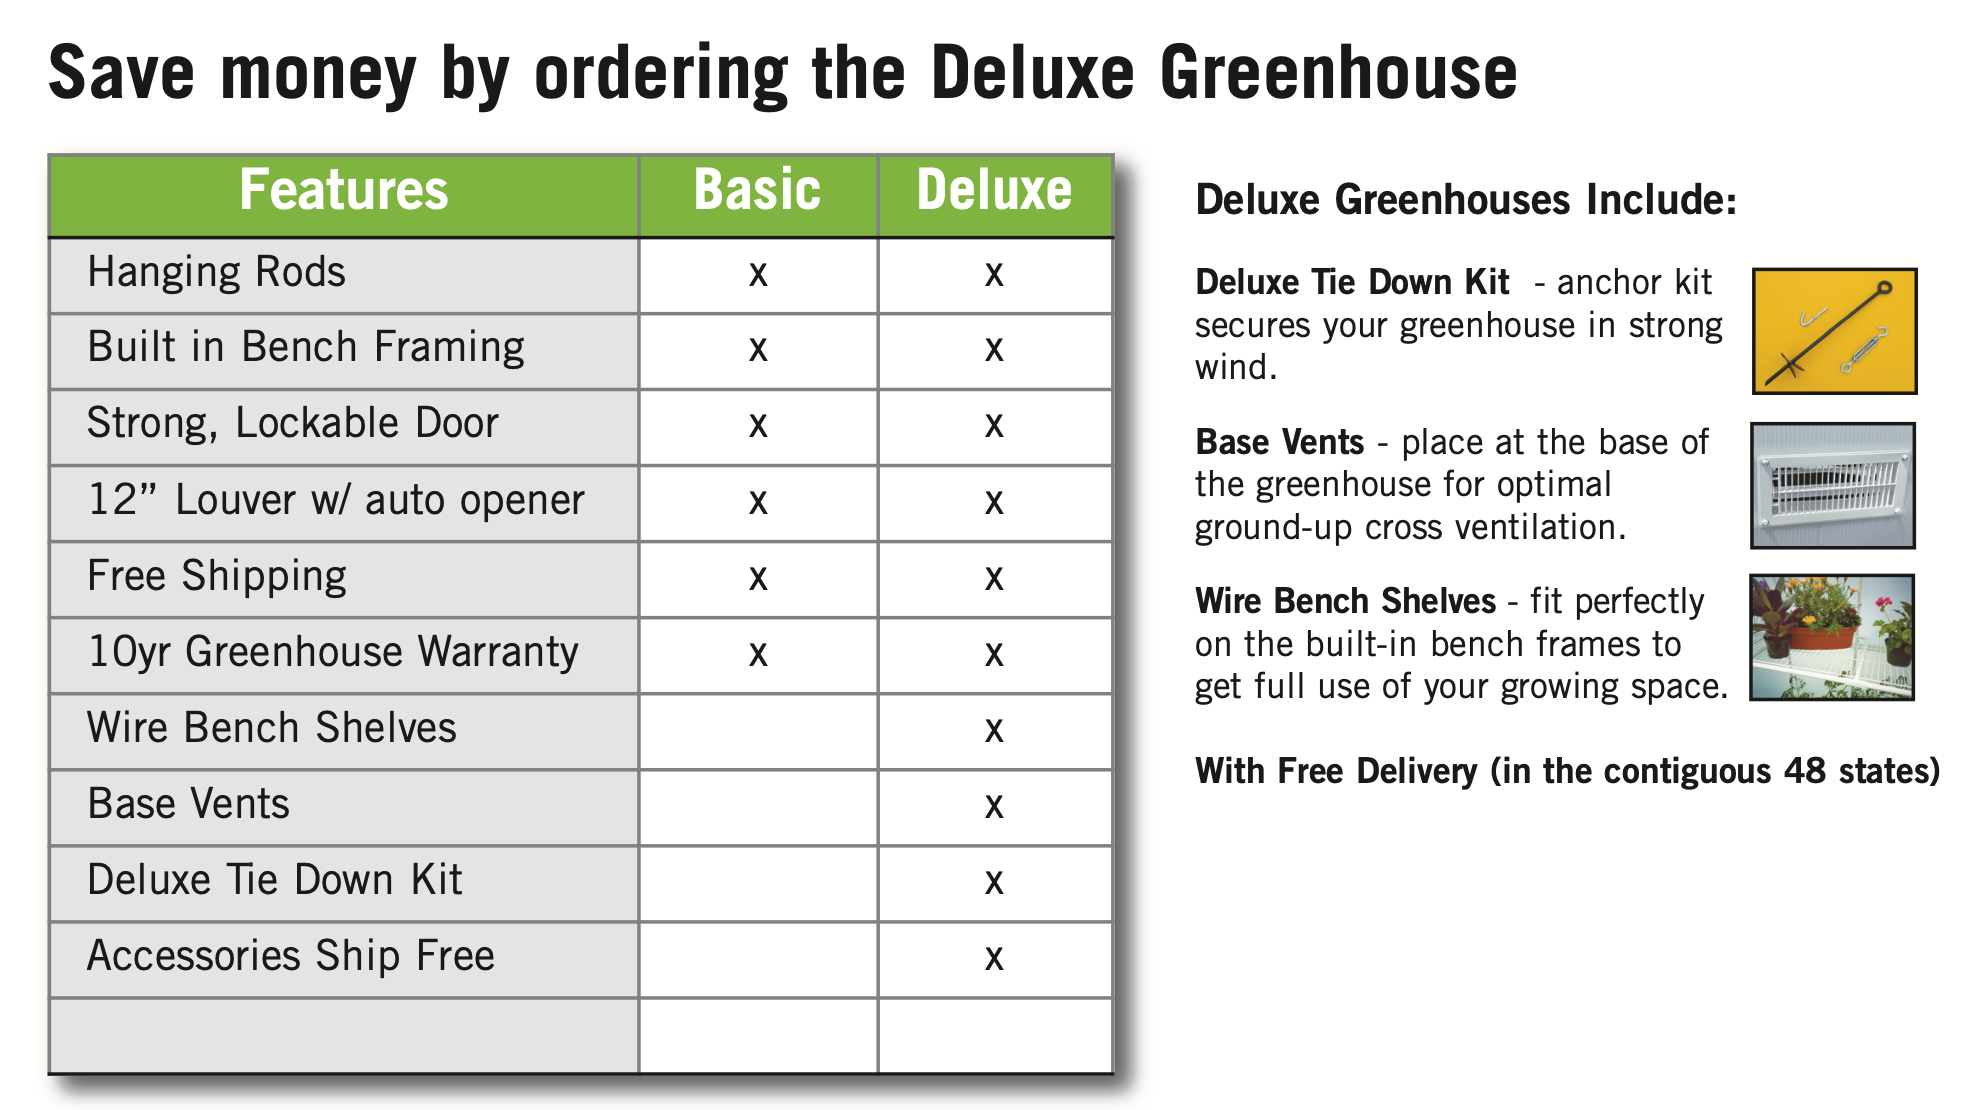 Garden Master Greenhouse - Garden Master™ 8x8x24.ft Heat Efficient Greenhouse